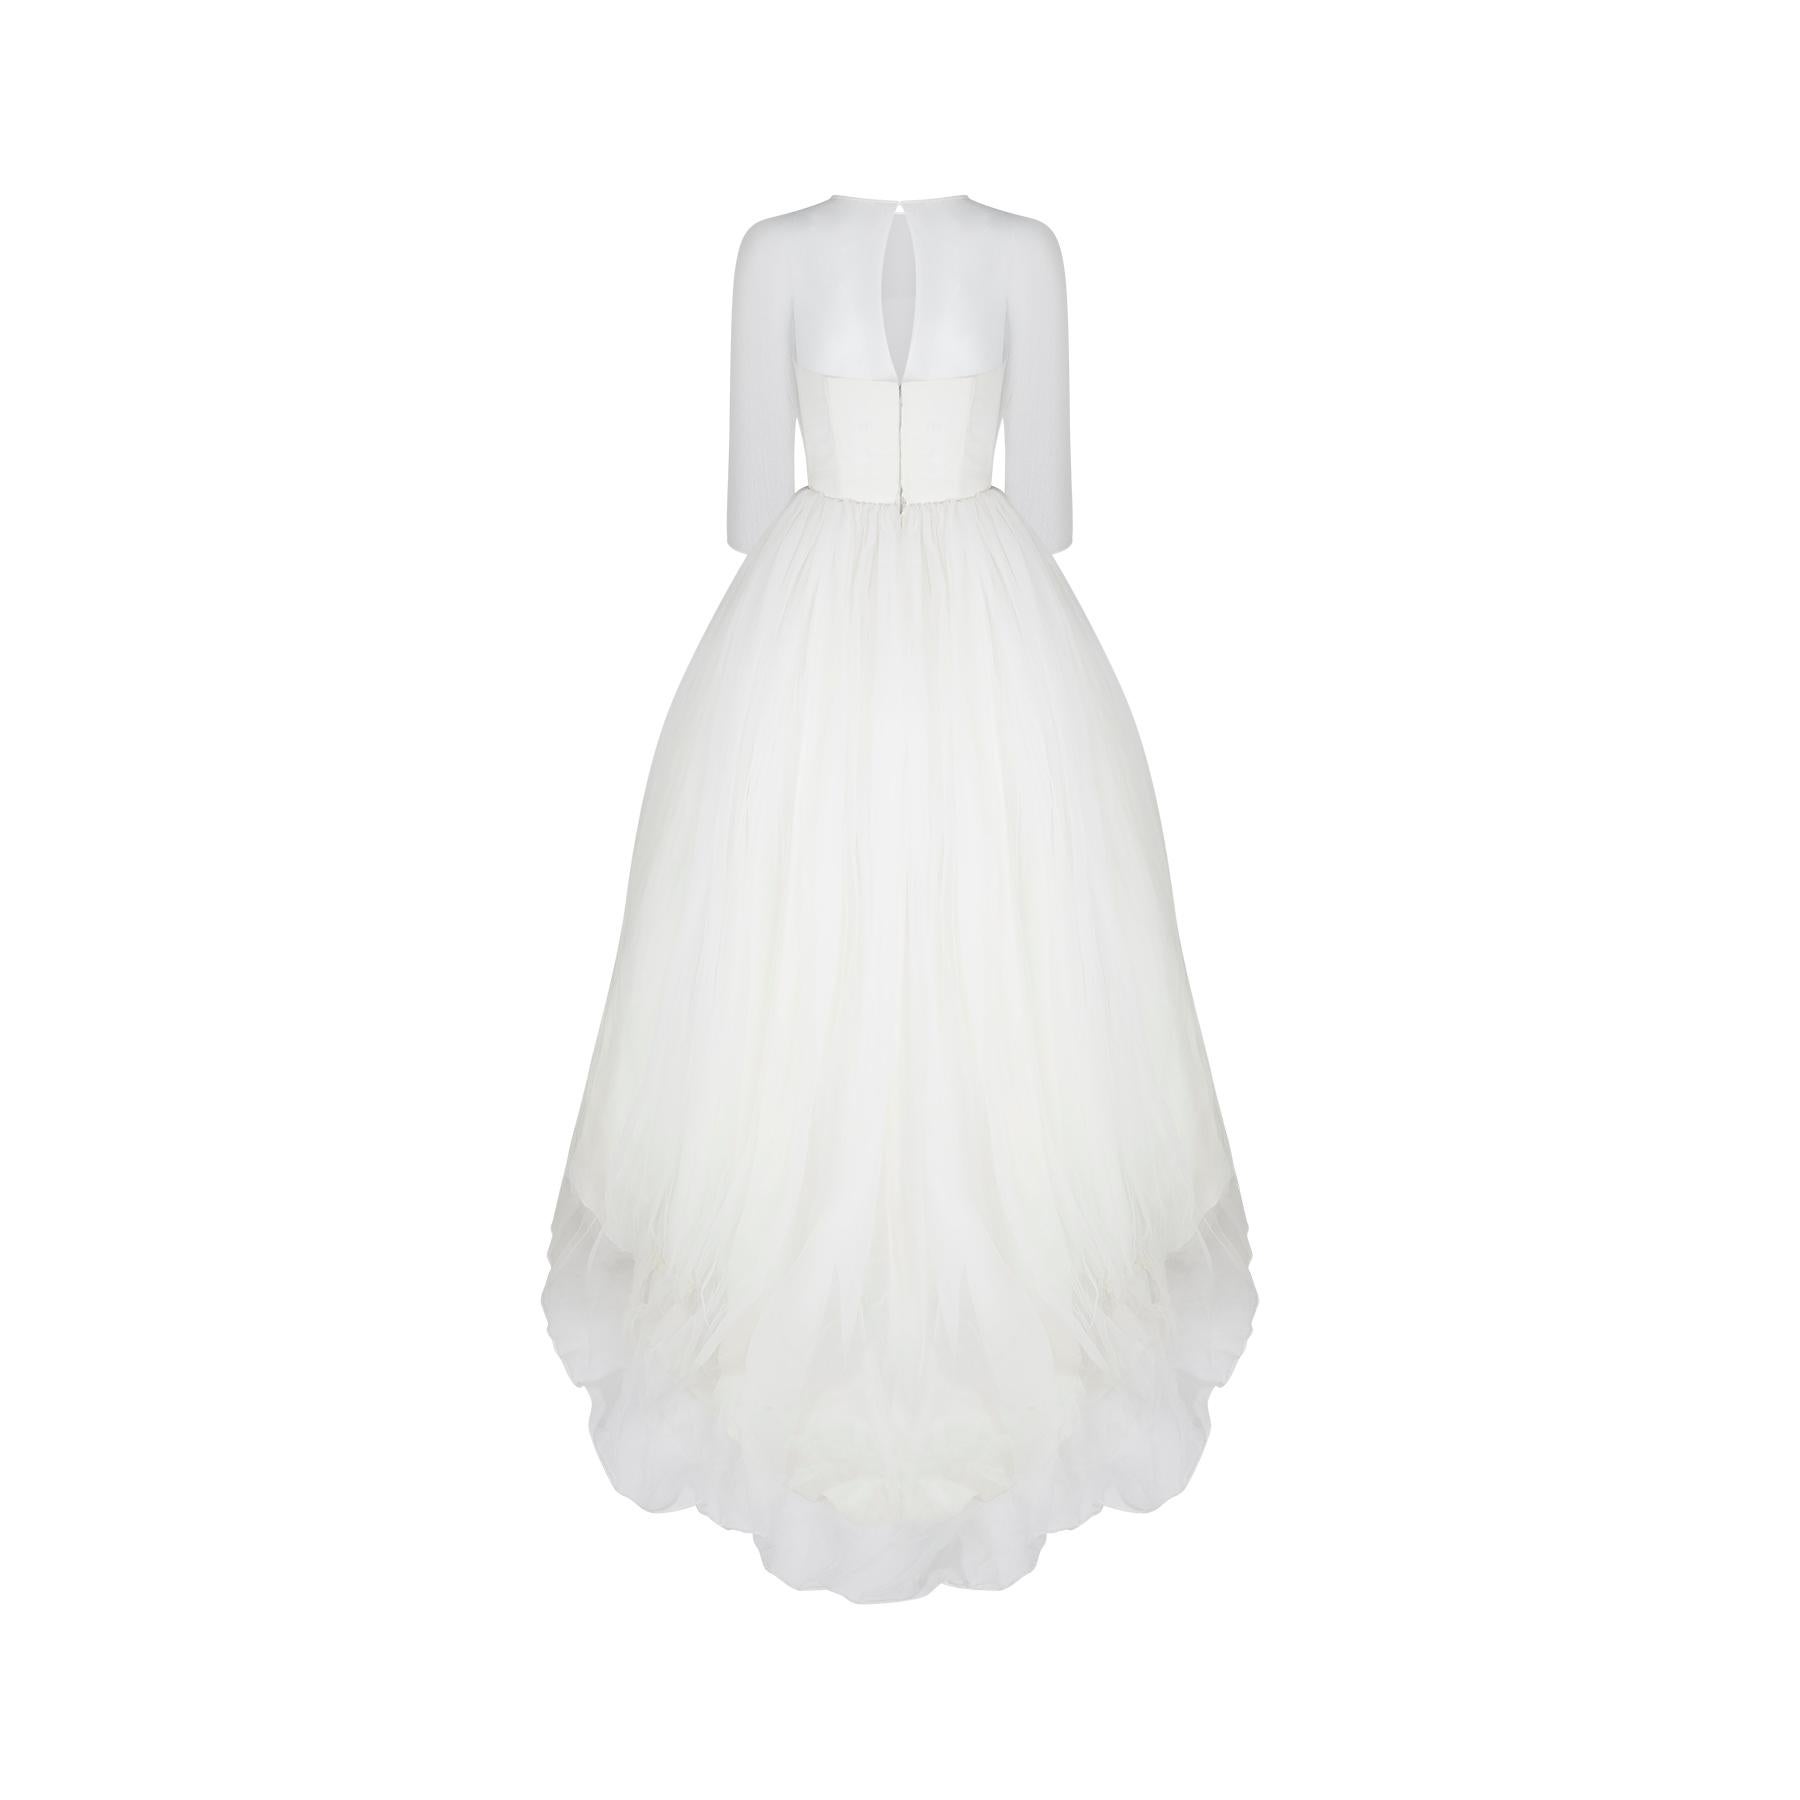 Dieses Hochzeitskleid aus den späten 1950er bis frühen 1960er Jahren ist eine Rarität.  Es ist das früheste Hochzeitskleid und in der Tat das früheste Stück, das wir je von Designer Jean Varon gesehen haben, der 1959 sein eigenes Label gründete.  Es